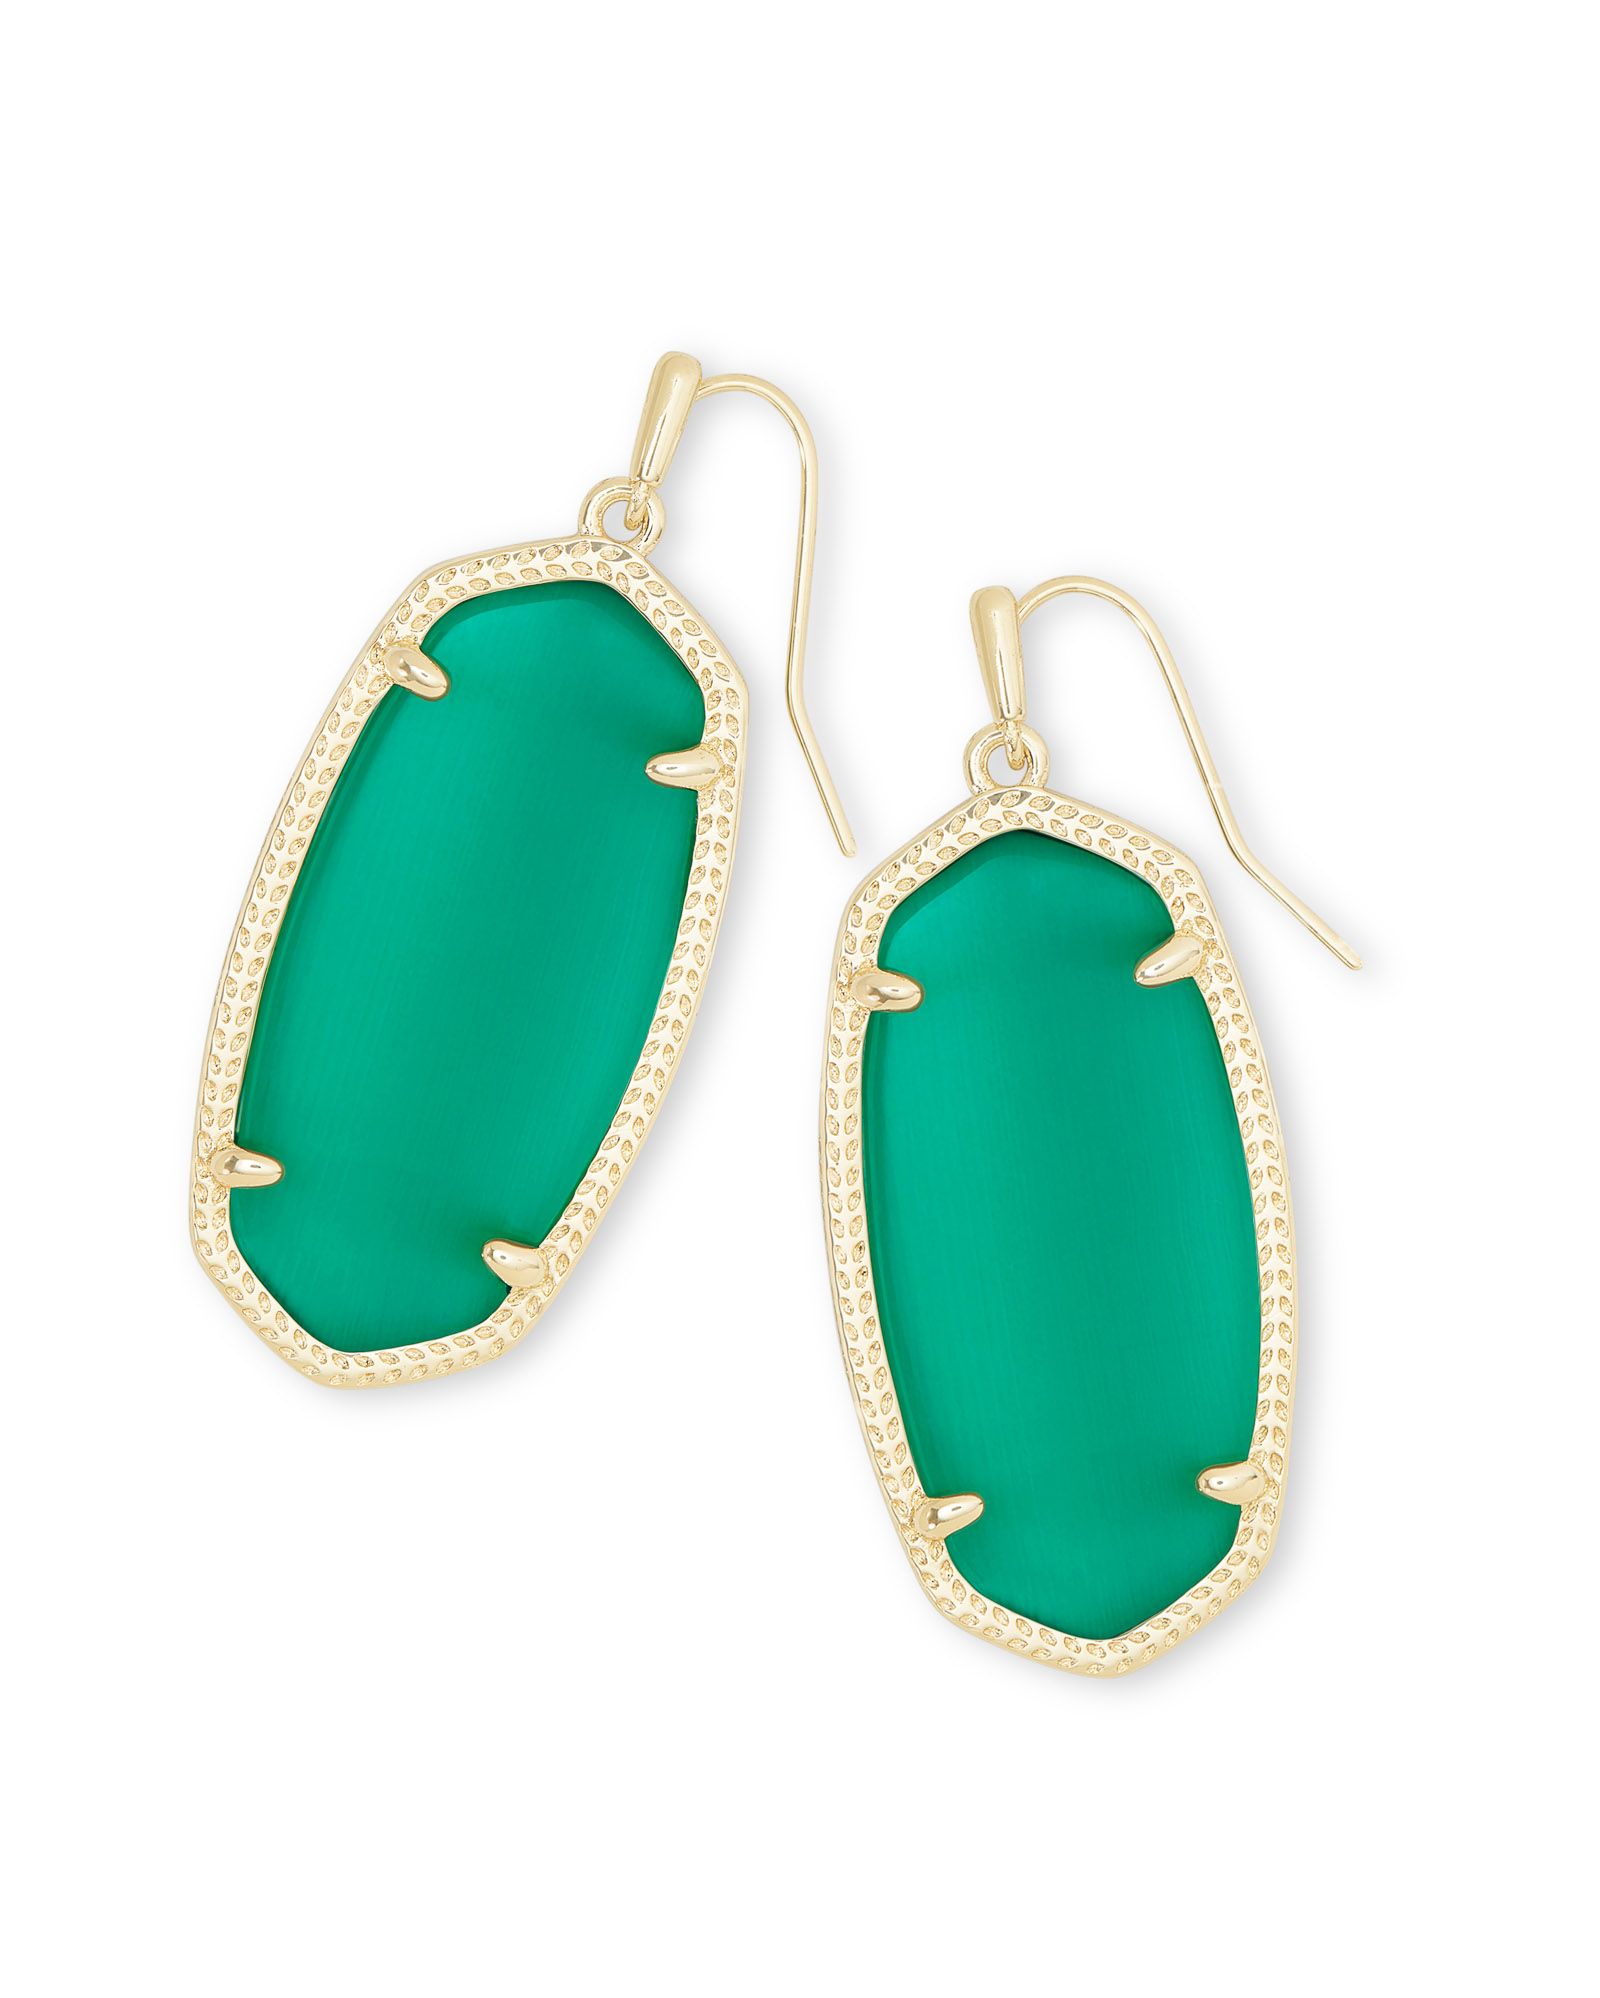 Elle Gold Drop Earrings in Emerald Cat's Eye | Kendra Scott